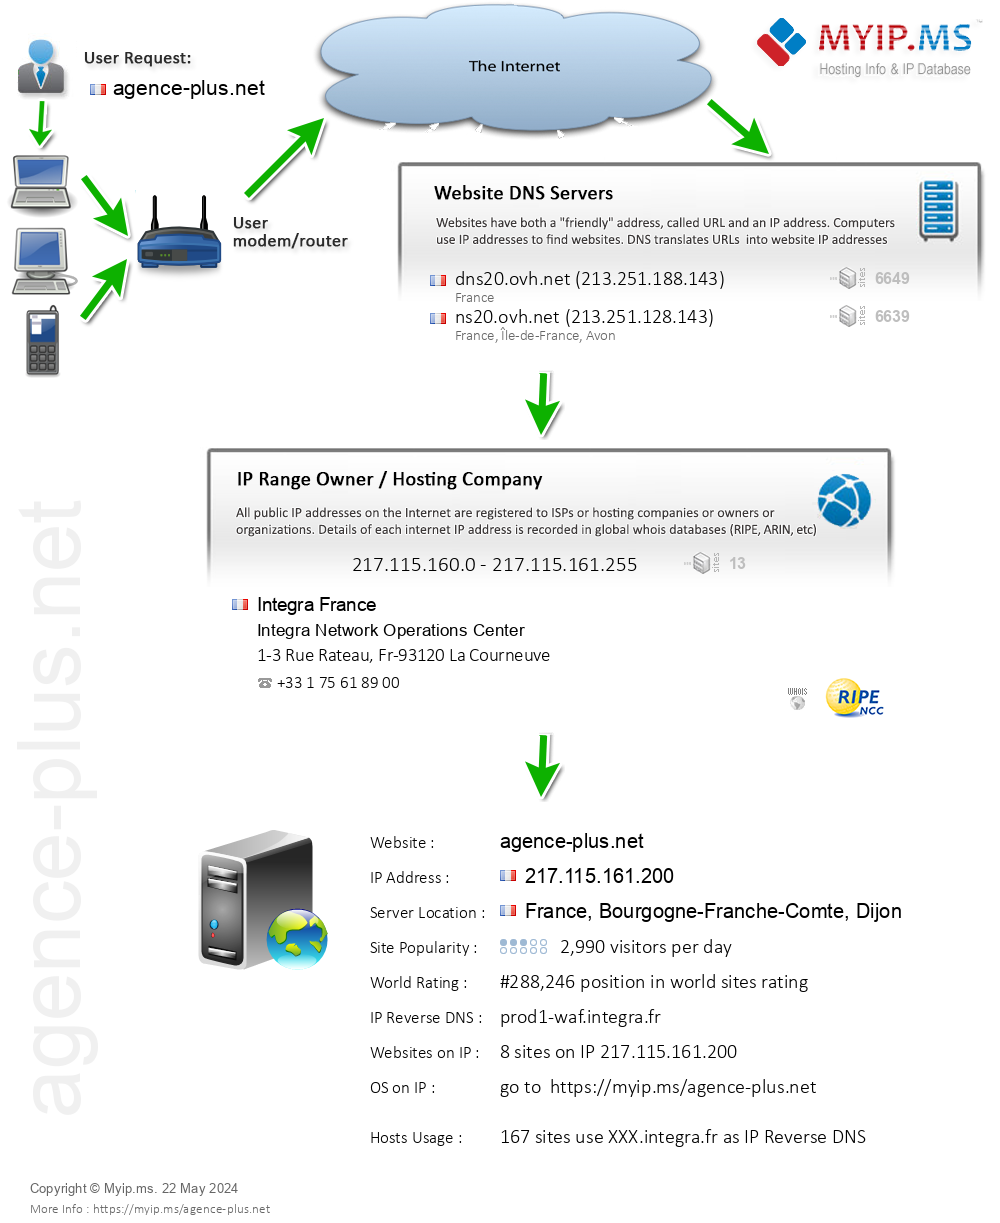 Agence-plus.net - Website Hosting Visual IP Diagram